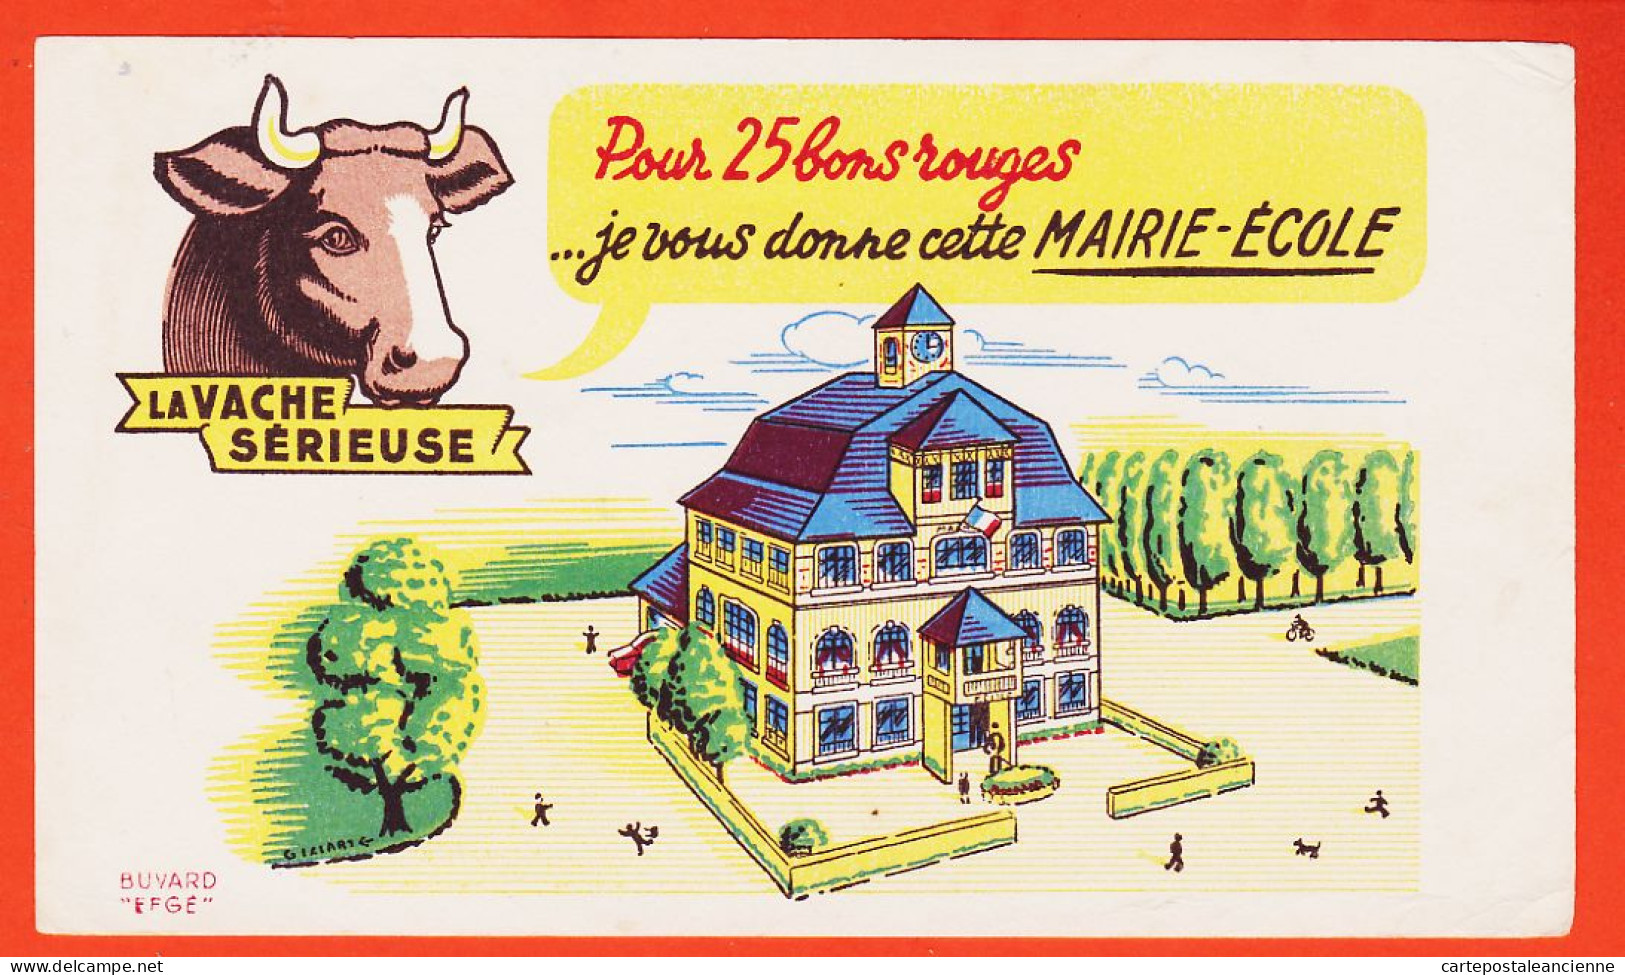 06170 / LA VACHE SERIEUSE Crème Double Crème De Gruyère Pour 30 Bons Cette Superbe Eglise / Buvard EFGE 1950s Cppub - Food